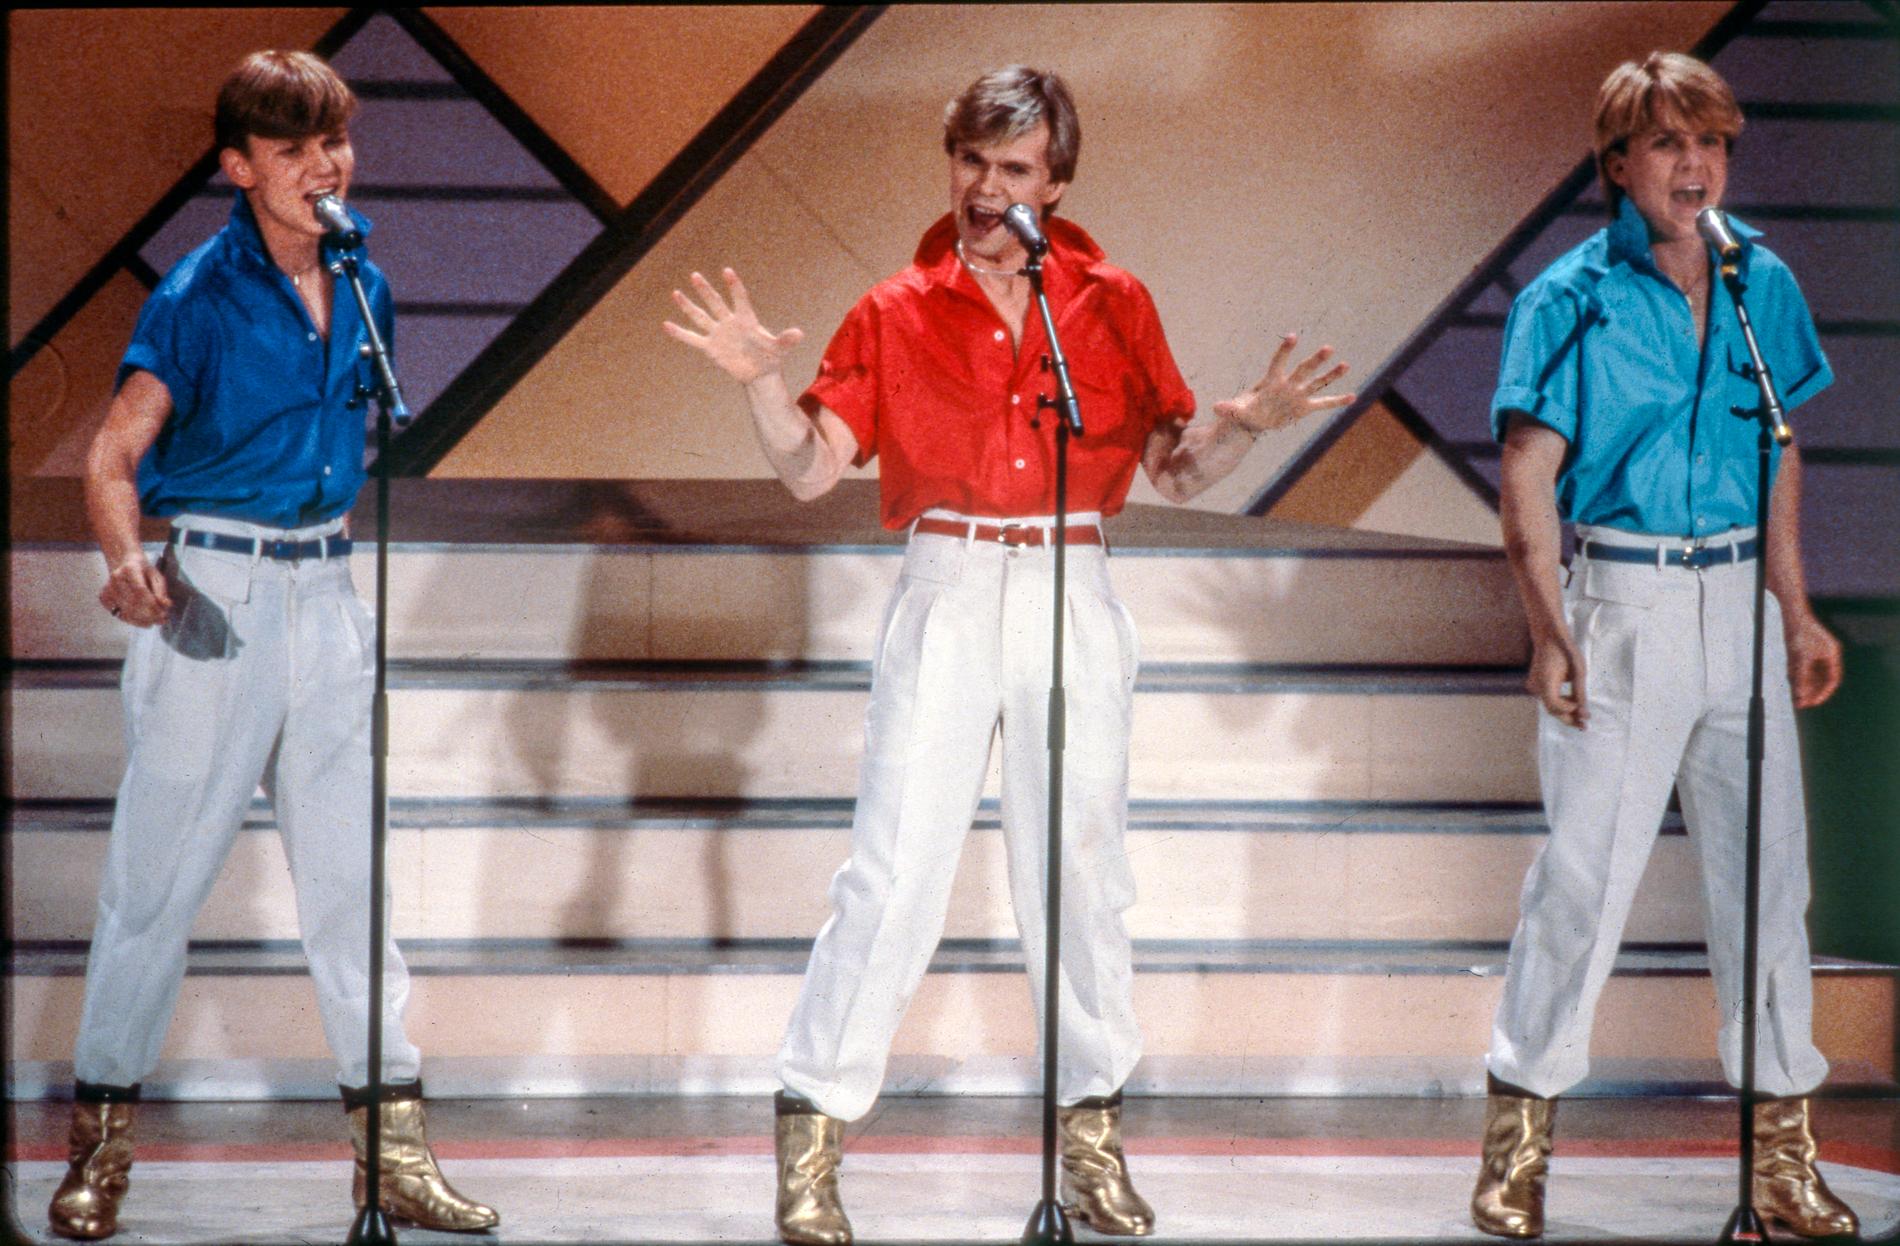 Bröderna Louis, Per och Richard Herrey vann Eurovision 1984. I sommar kliver de upp på scenen igen i Falun. Falun.